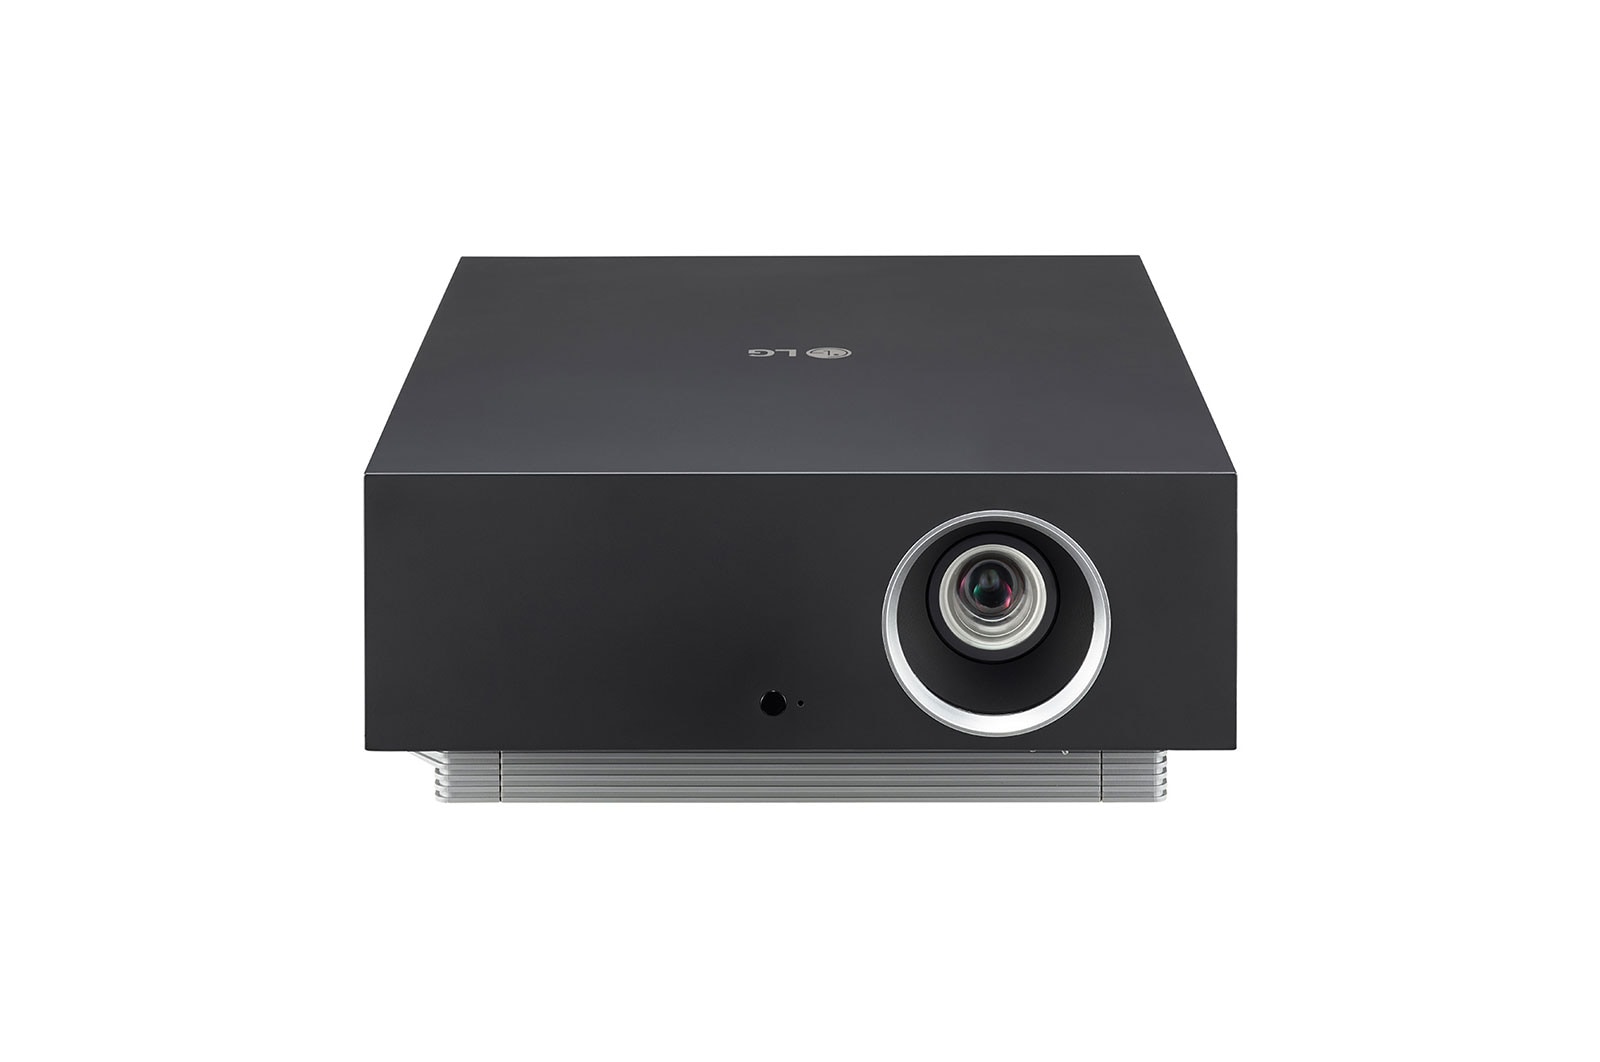 LG Projecteur intelligent CineBeam AU810P pour cinéma maison 4K UHD de LG, AU810PB